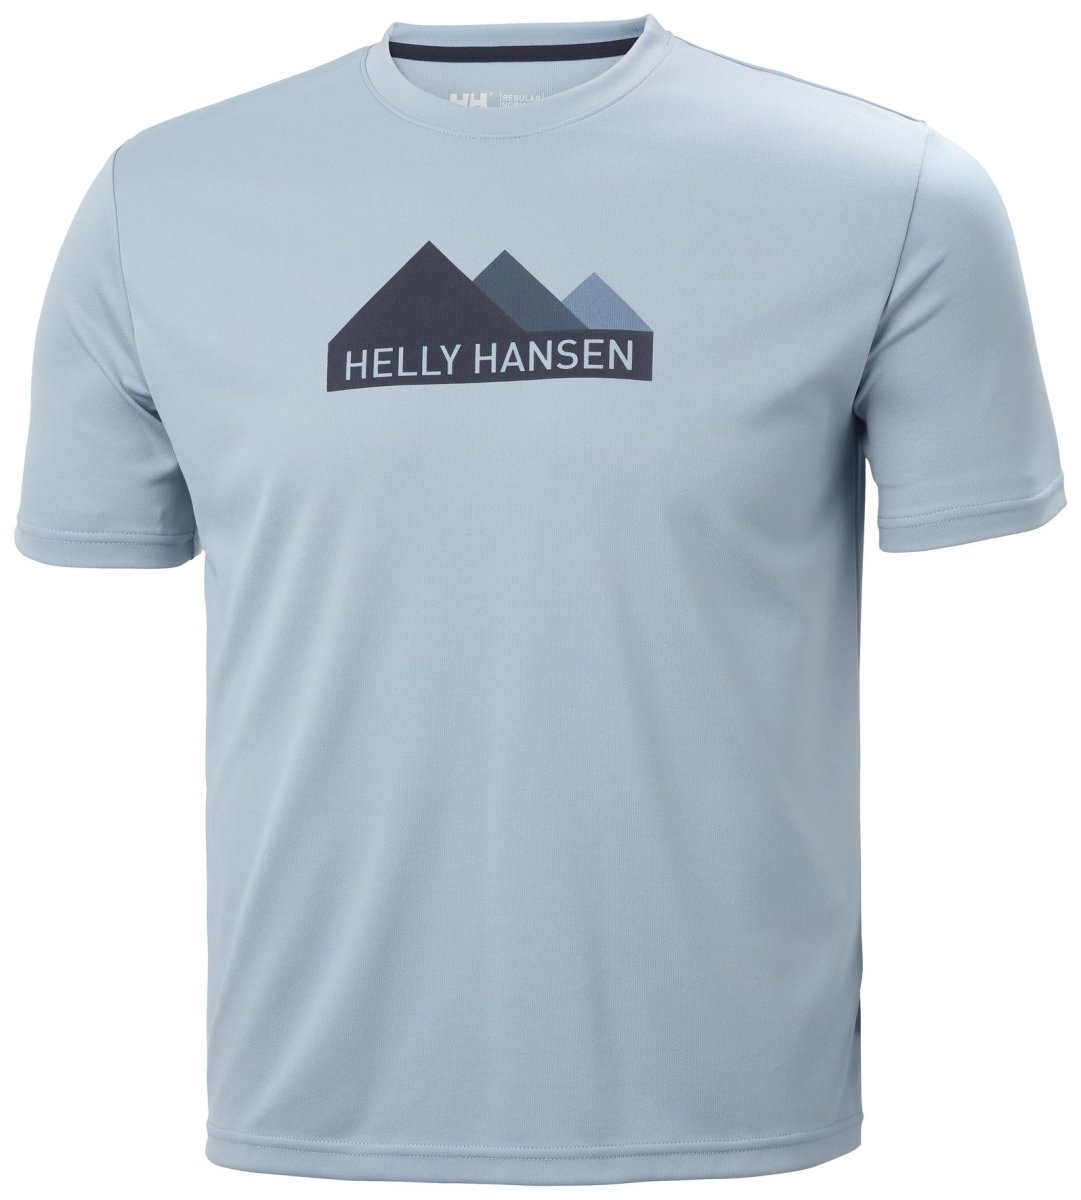 HH Helly Hansen Tech Graphic T-Shirt  63088 dusty blue Herren Shirt